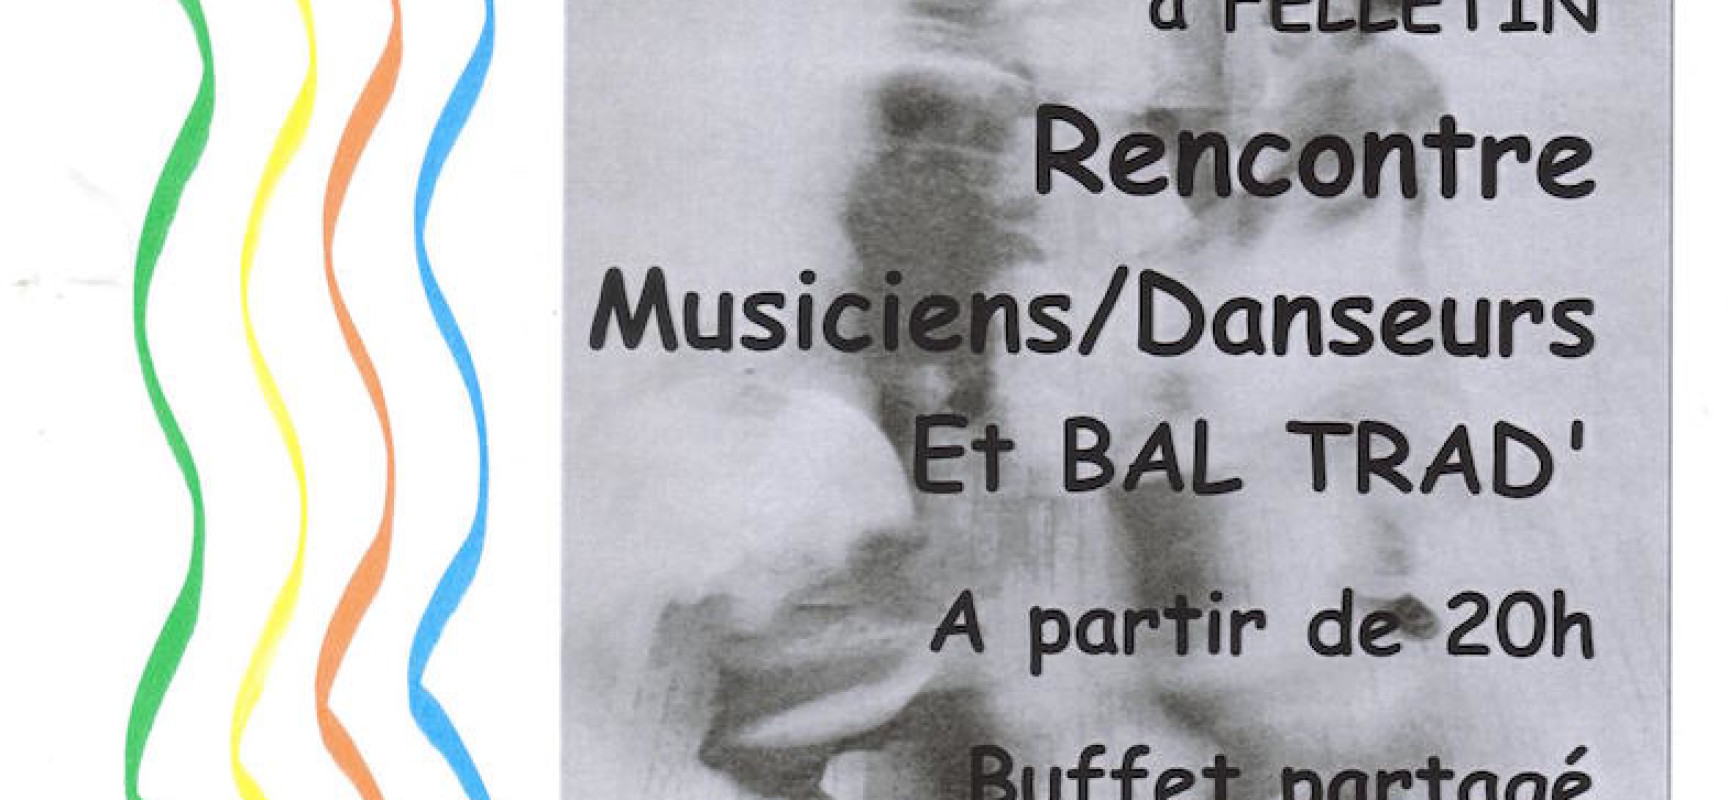 Réveillon Trad Partagé / TRAD’Fuse – Rencontres Musiciens/Danseurs #Felletin